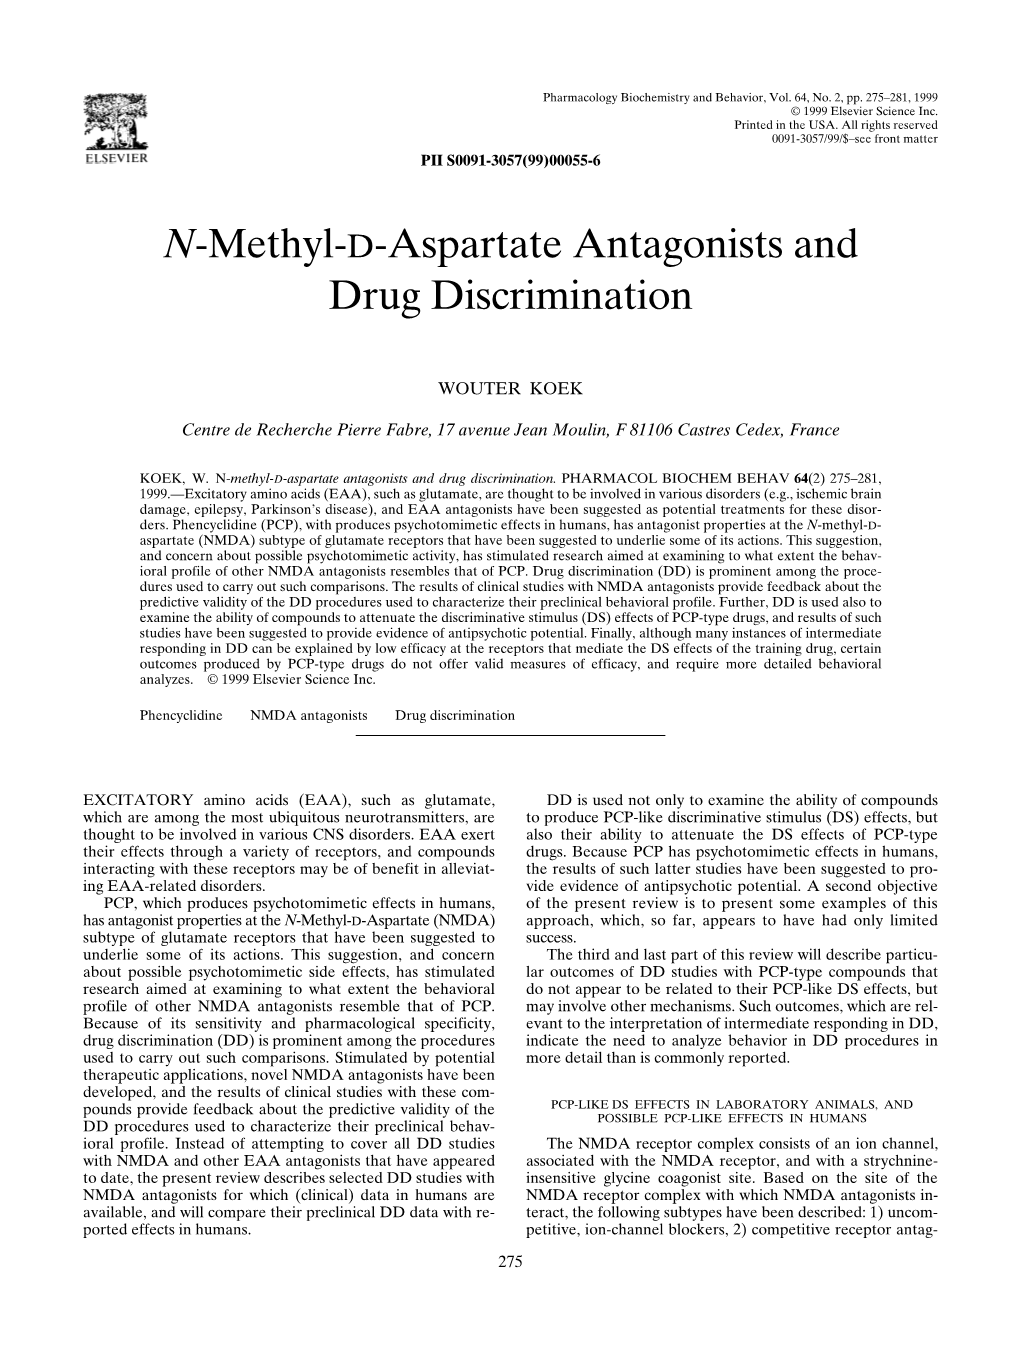 N-Methyl-D-Aspartate Antagonists and Drug Discrimination